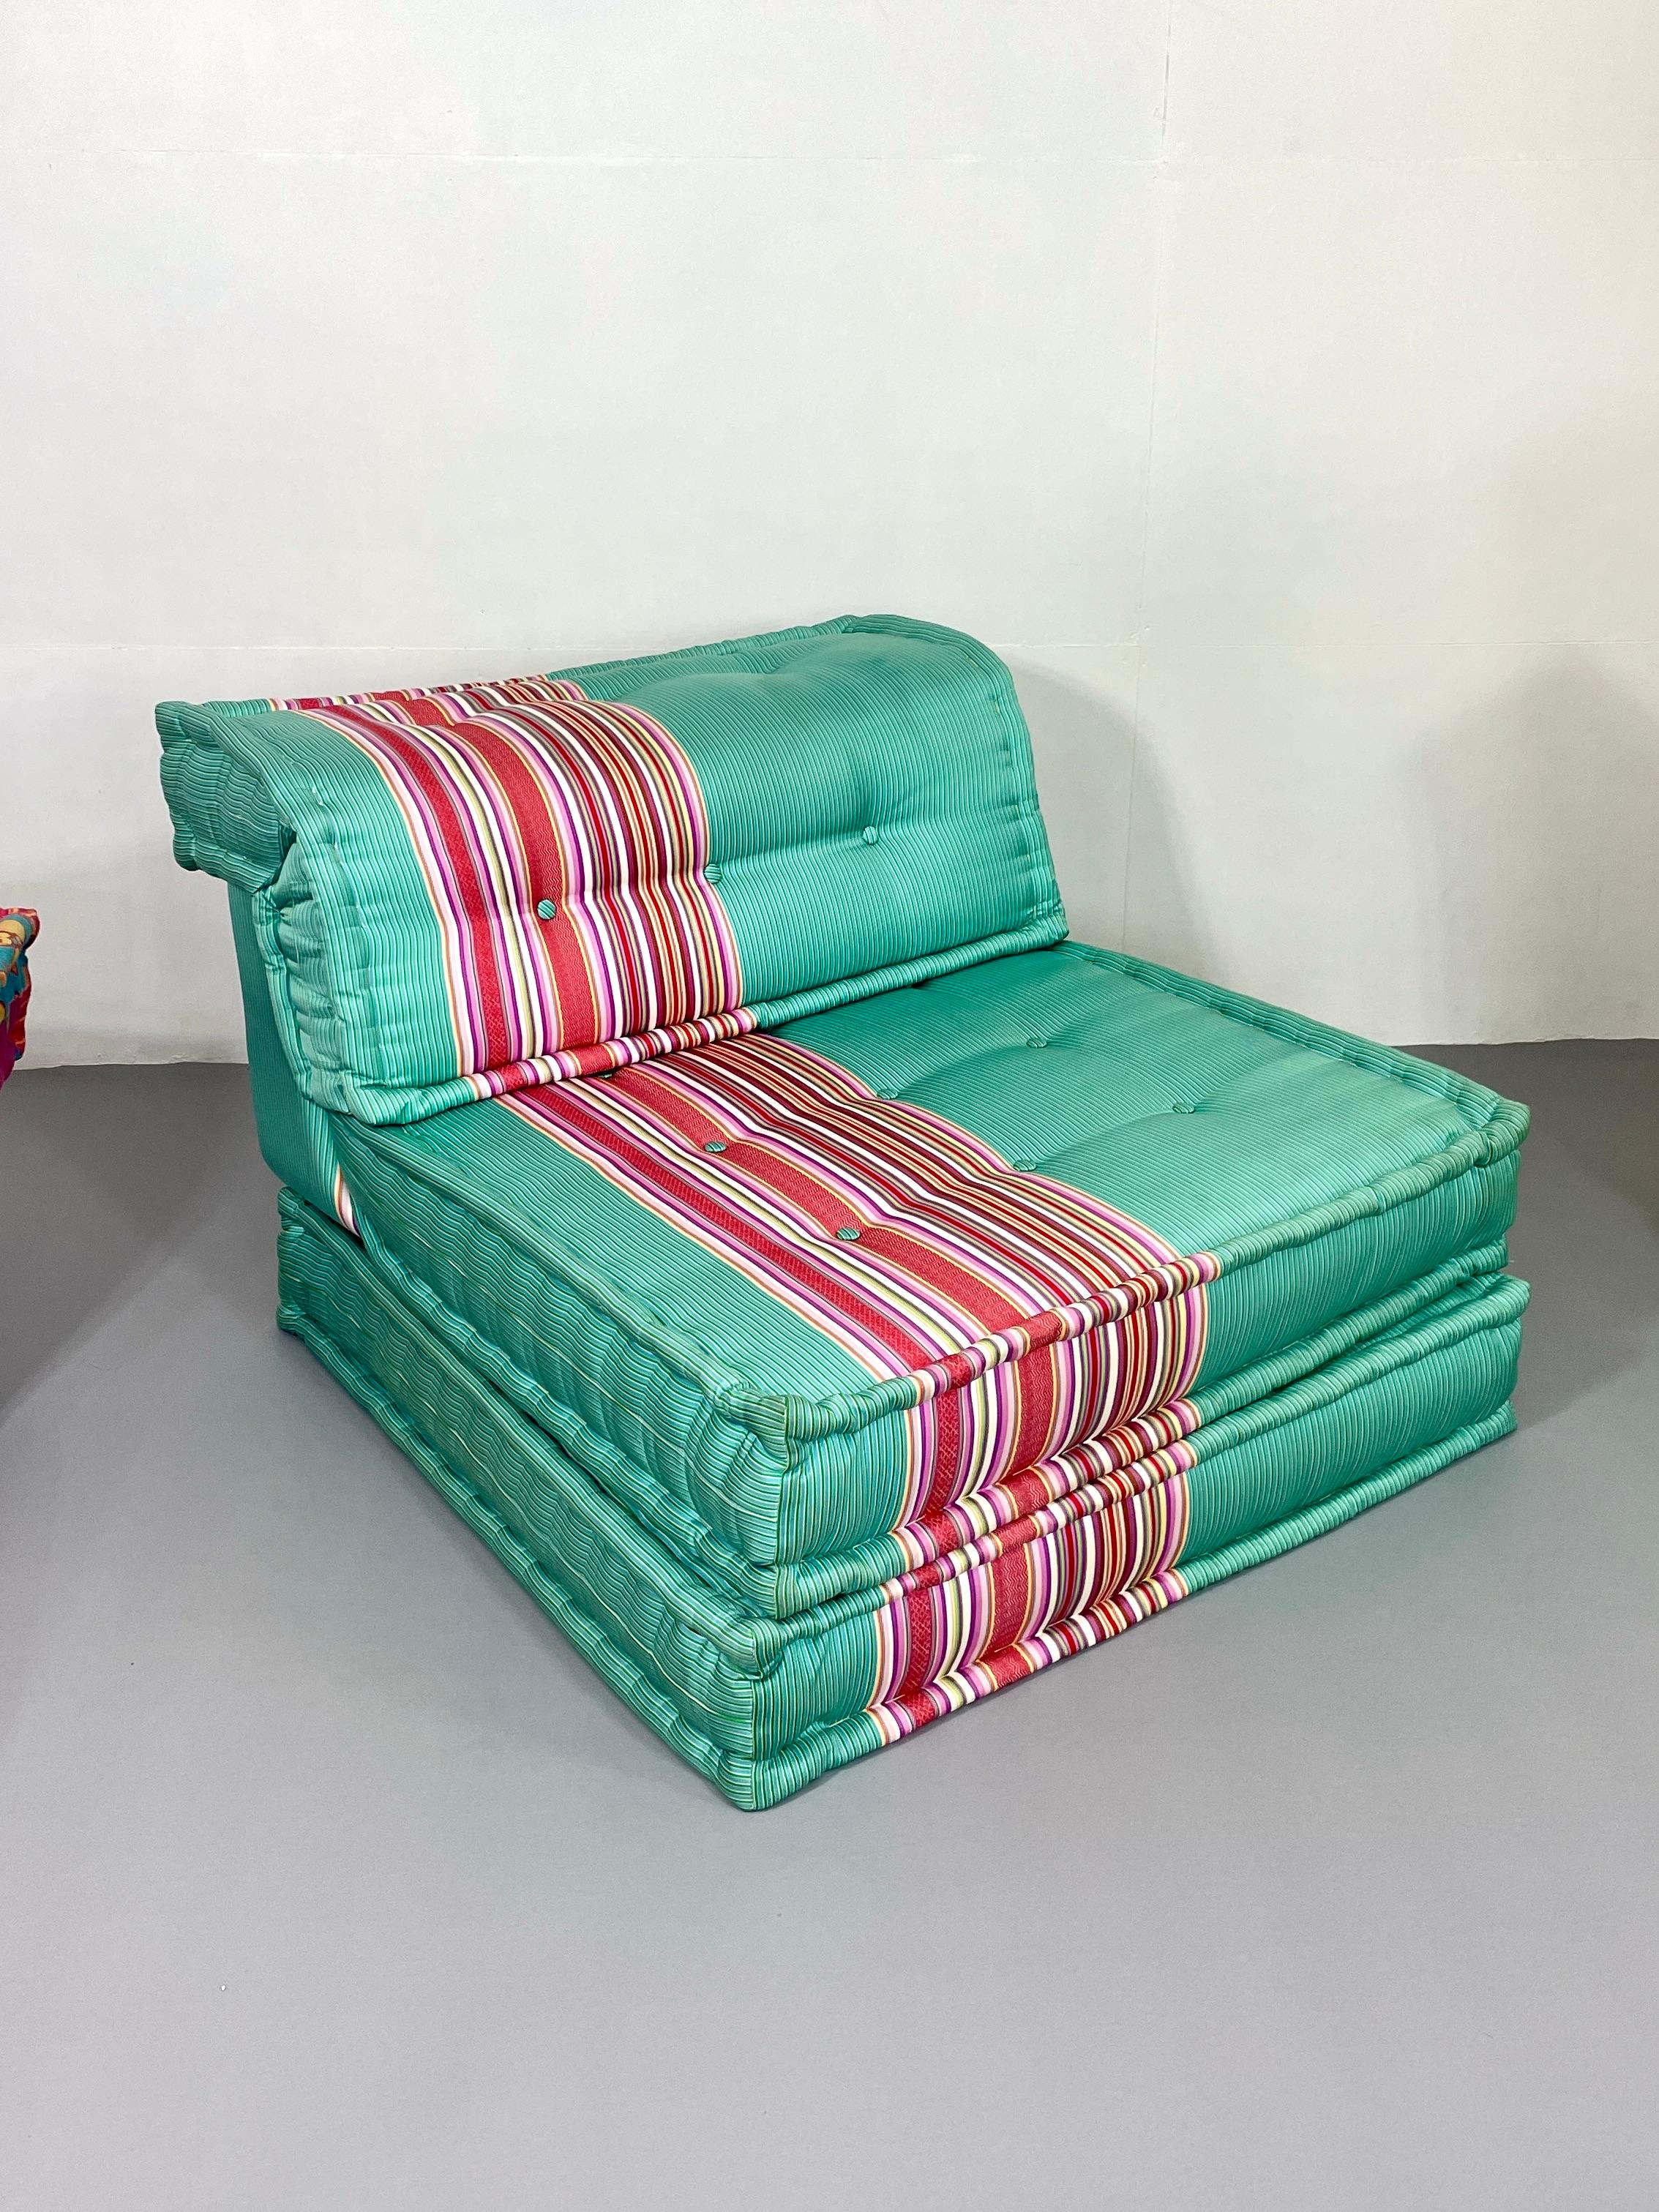 Mah jong sofa from Hans Hopfer for Roche Bobois design by Kenzo Takata  For Sale 2